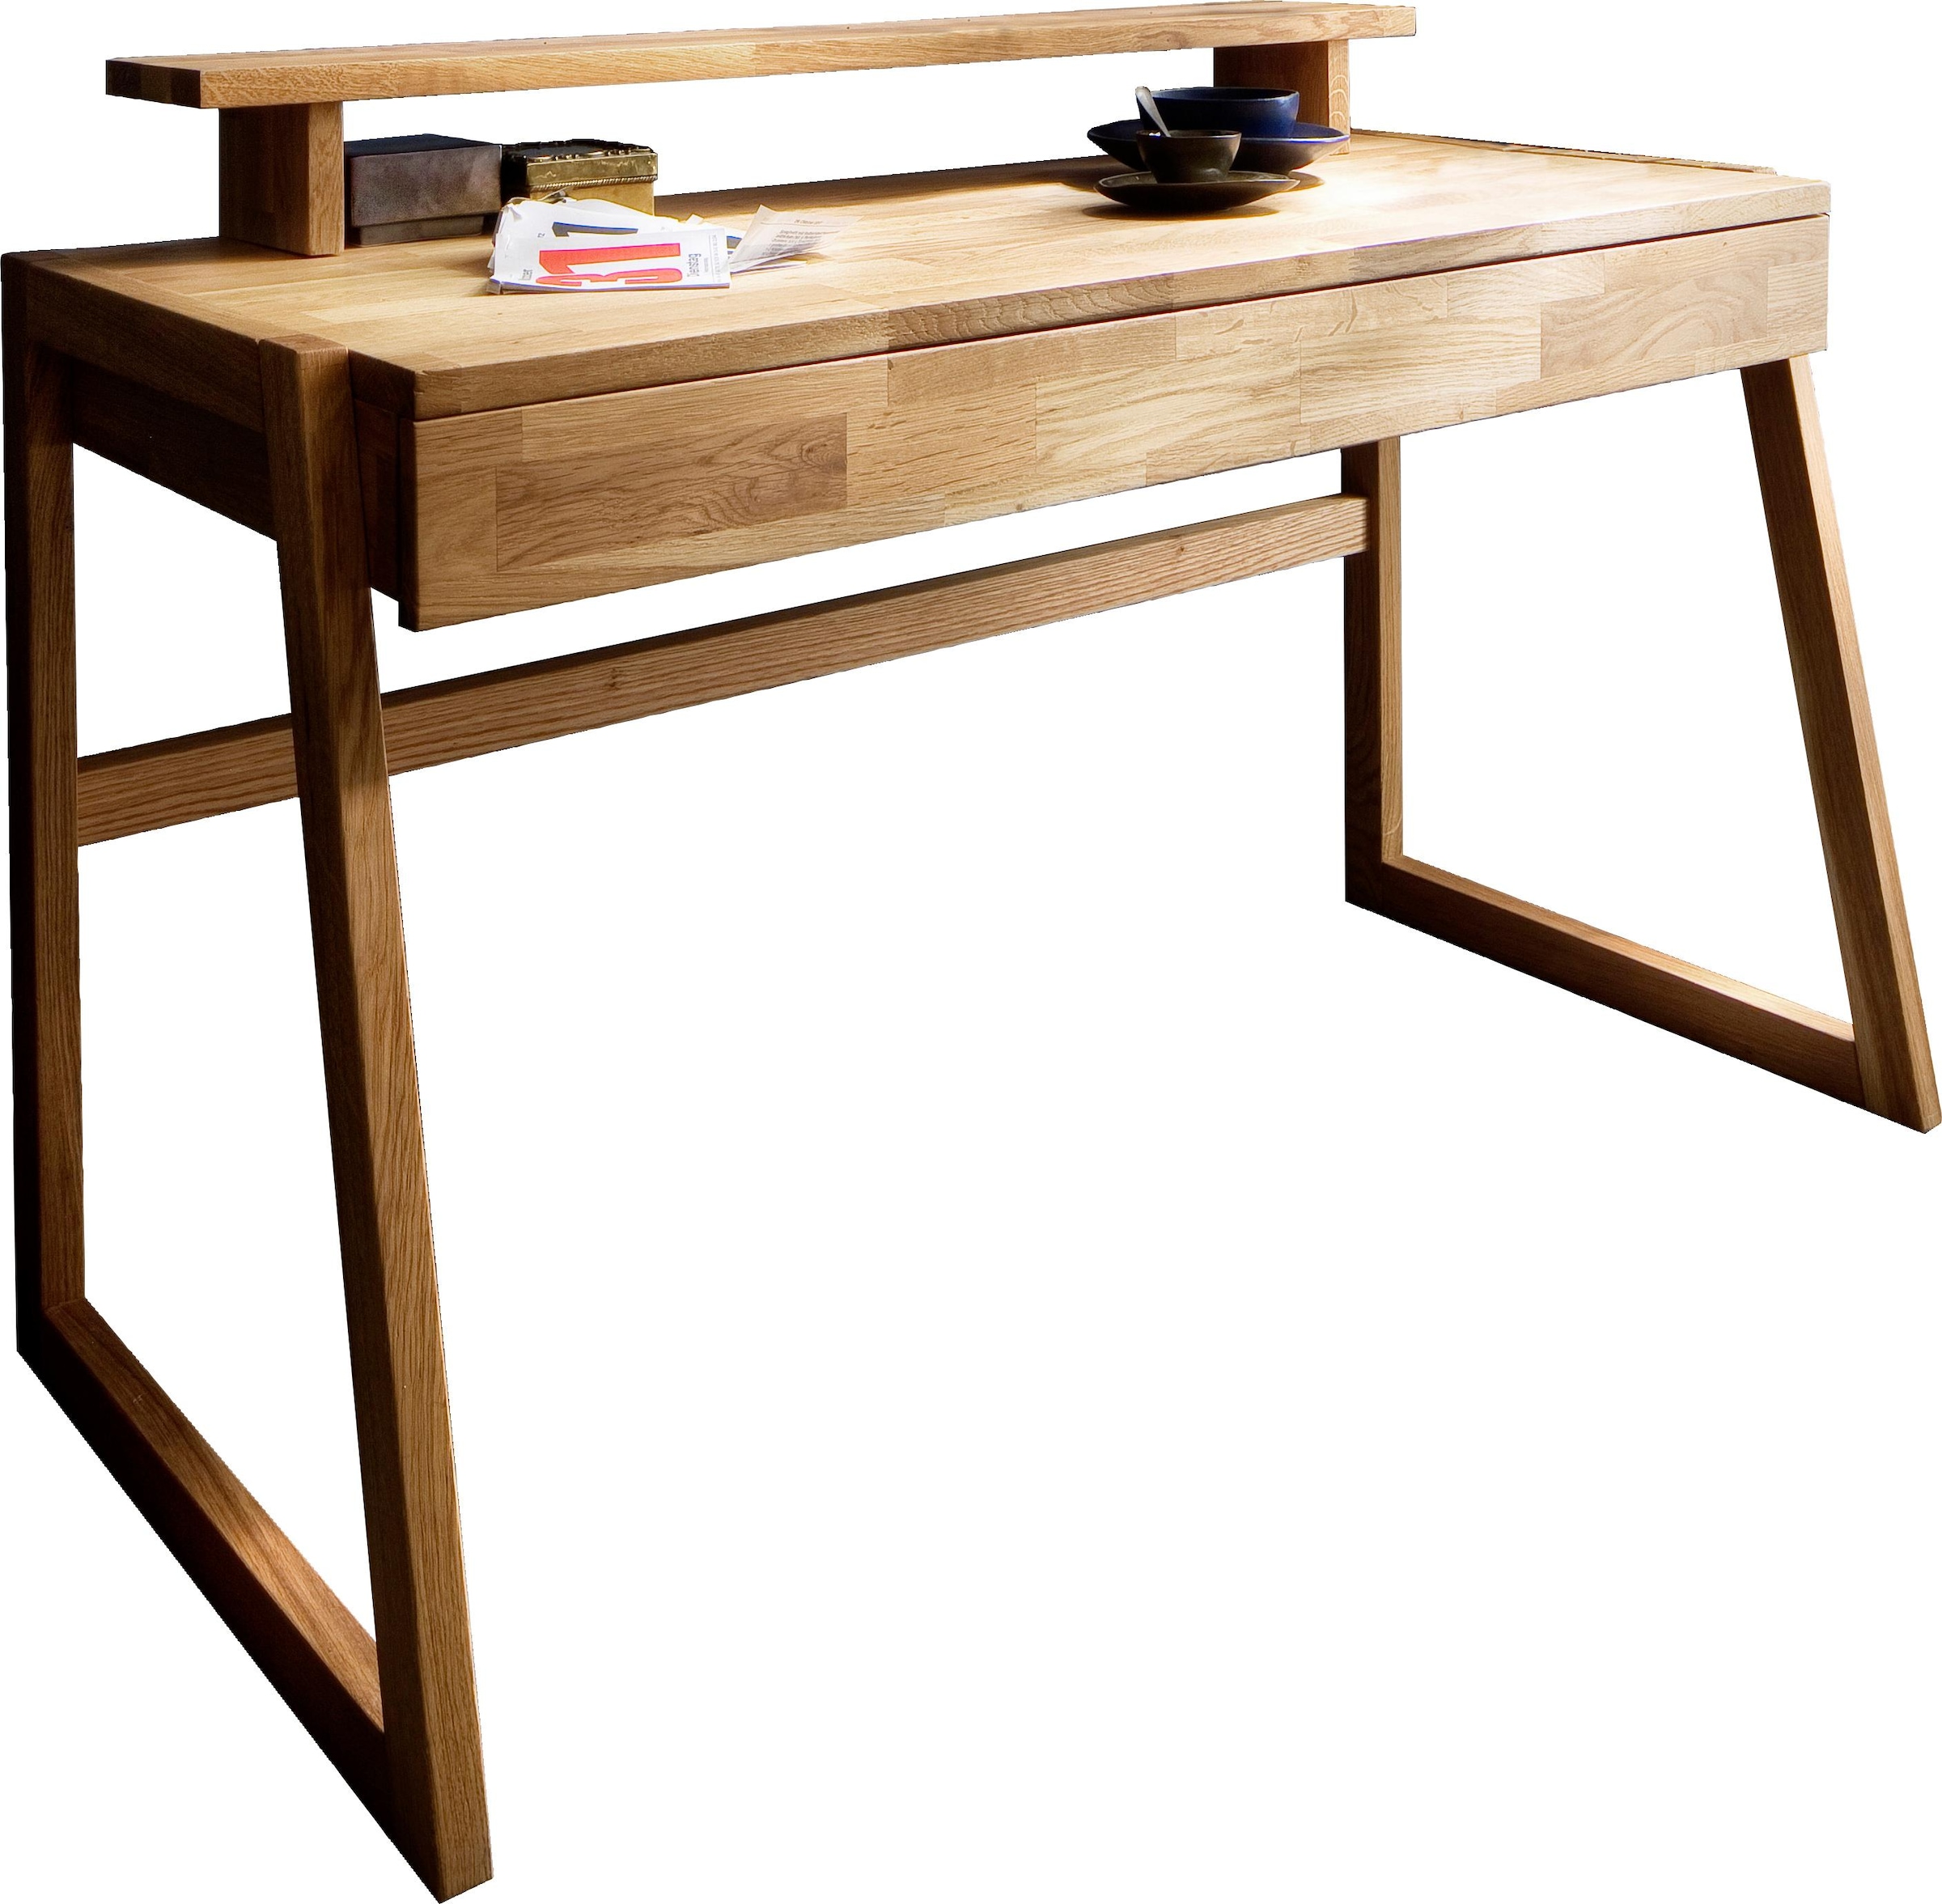 Tischaufsatz »Dura«, passend zum Schreibtisch: Serienname Dura